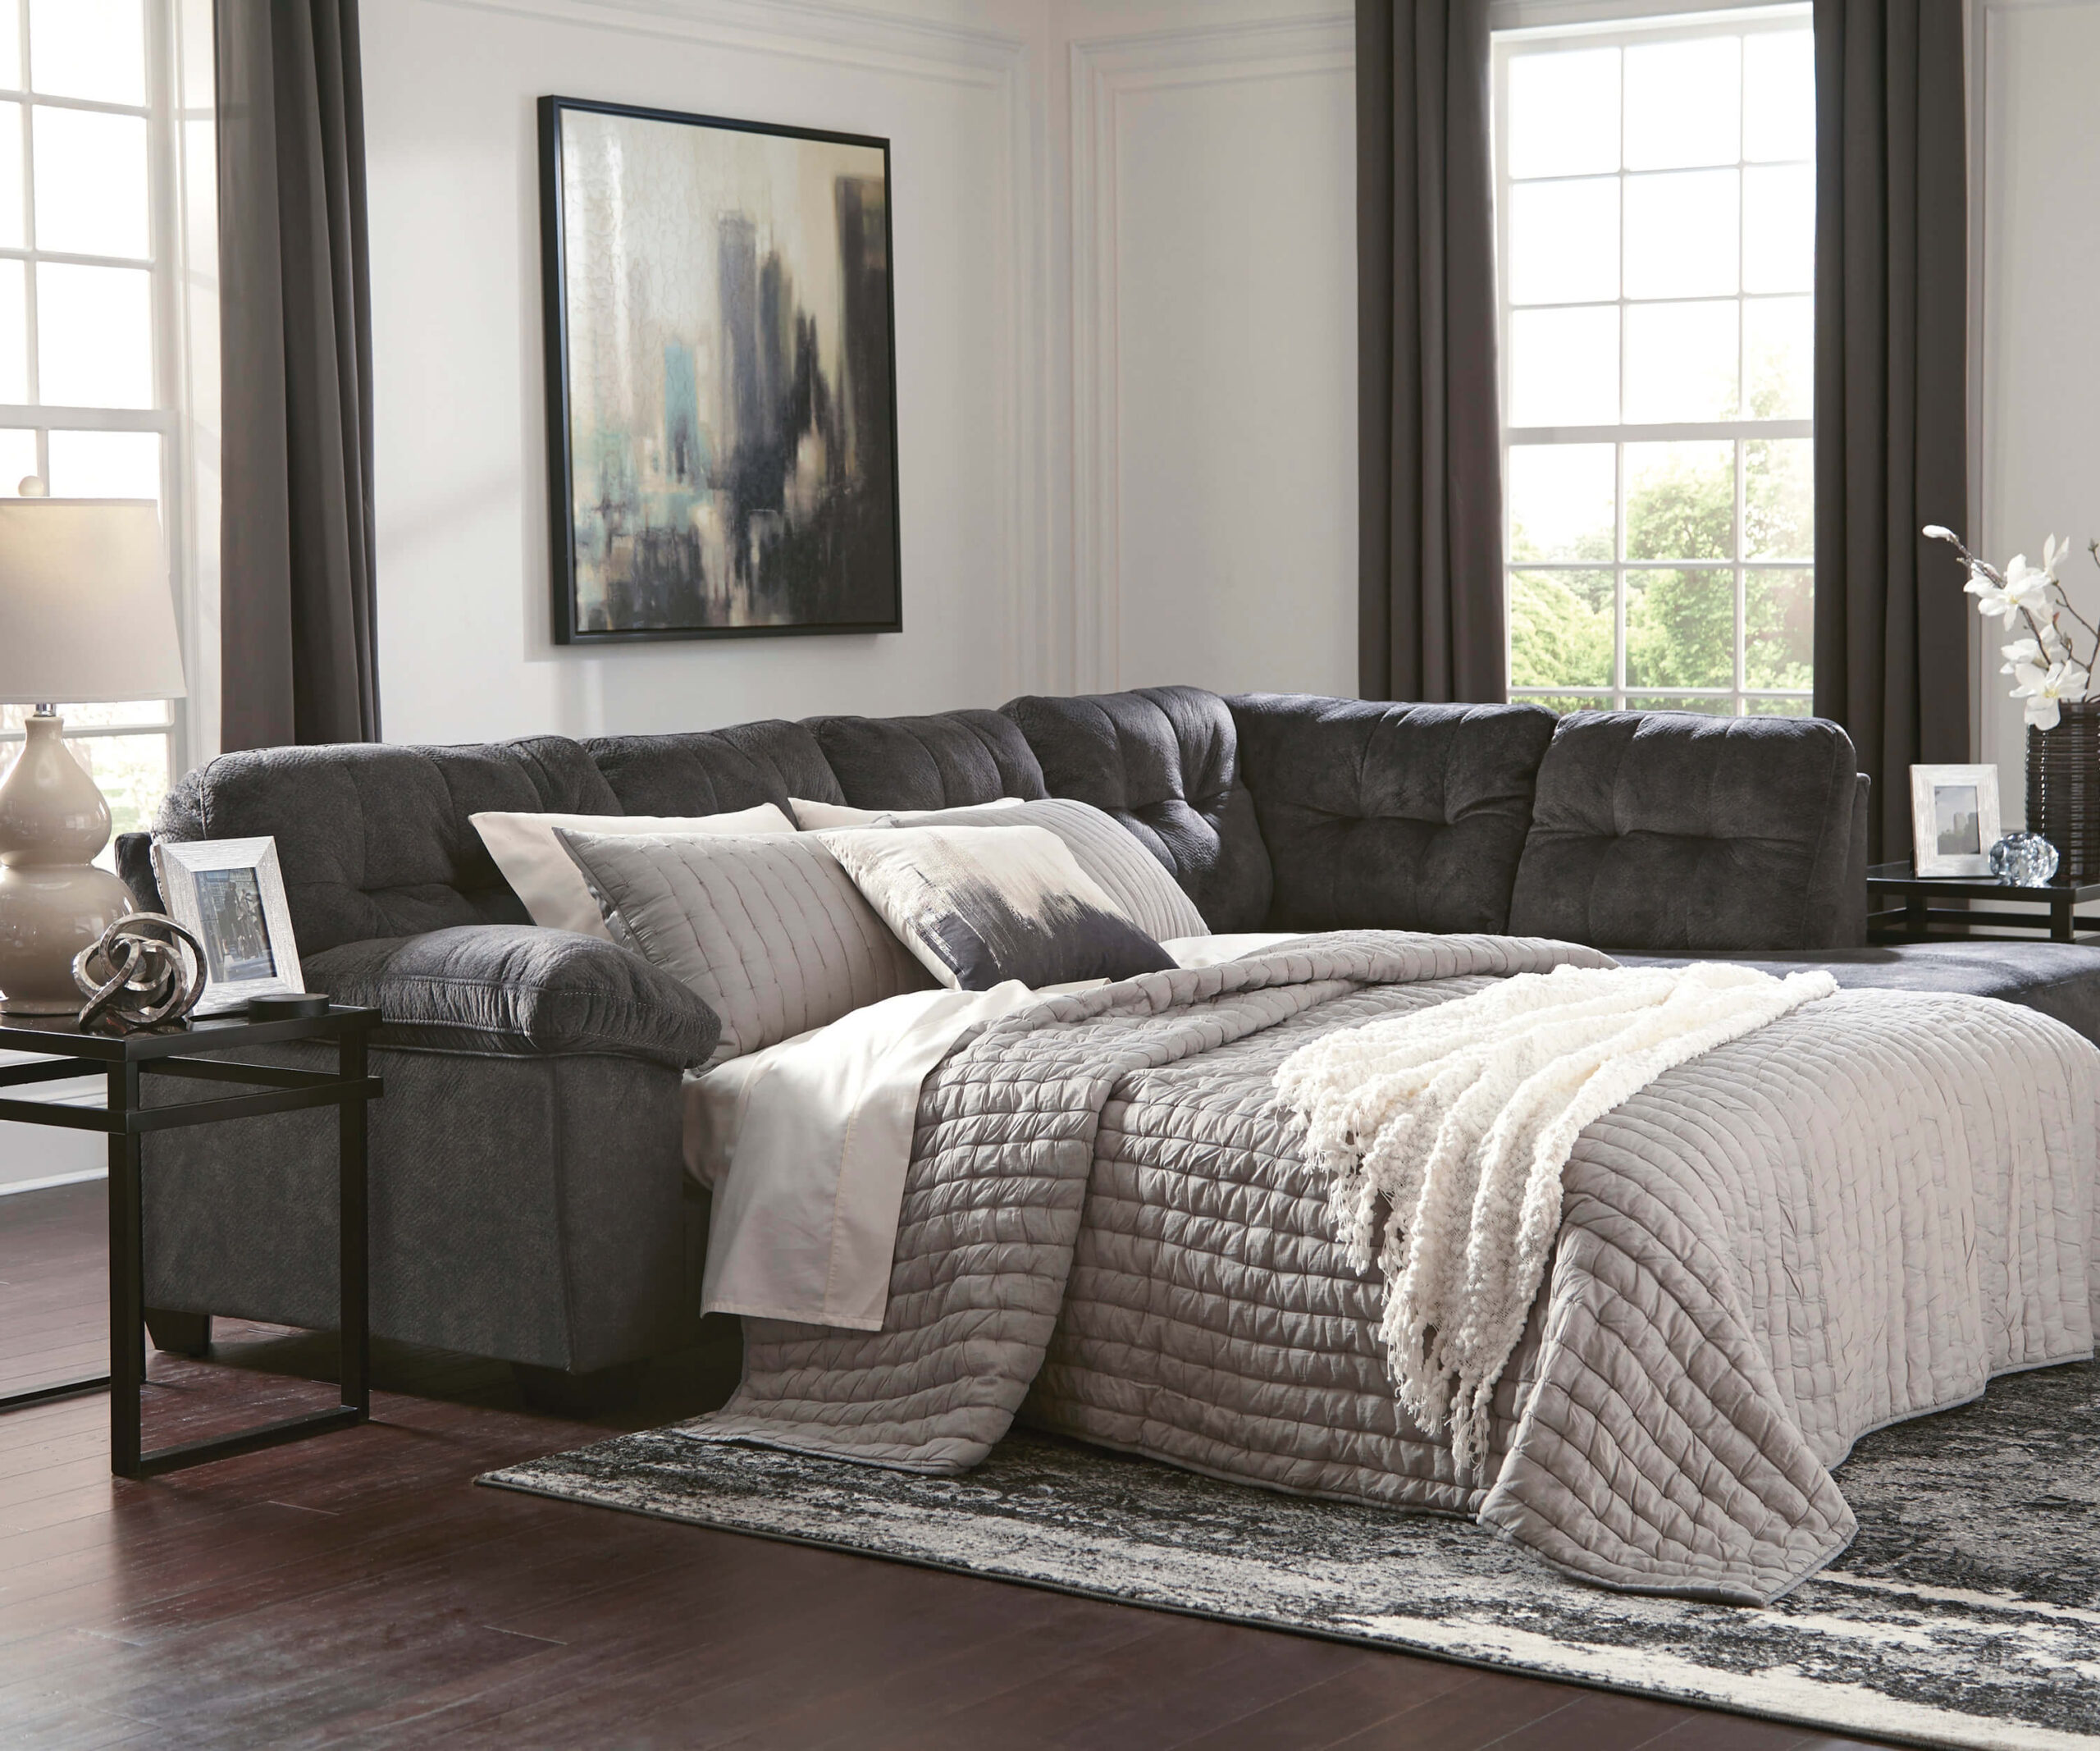 Ashley Accrington product image with sofa sleeper